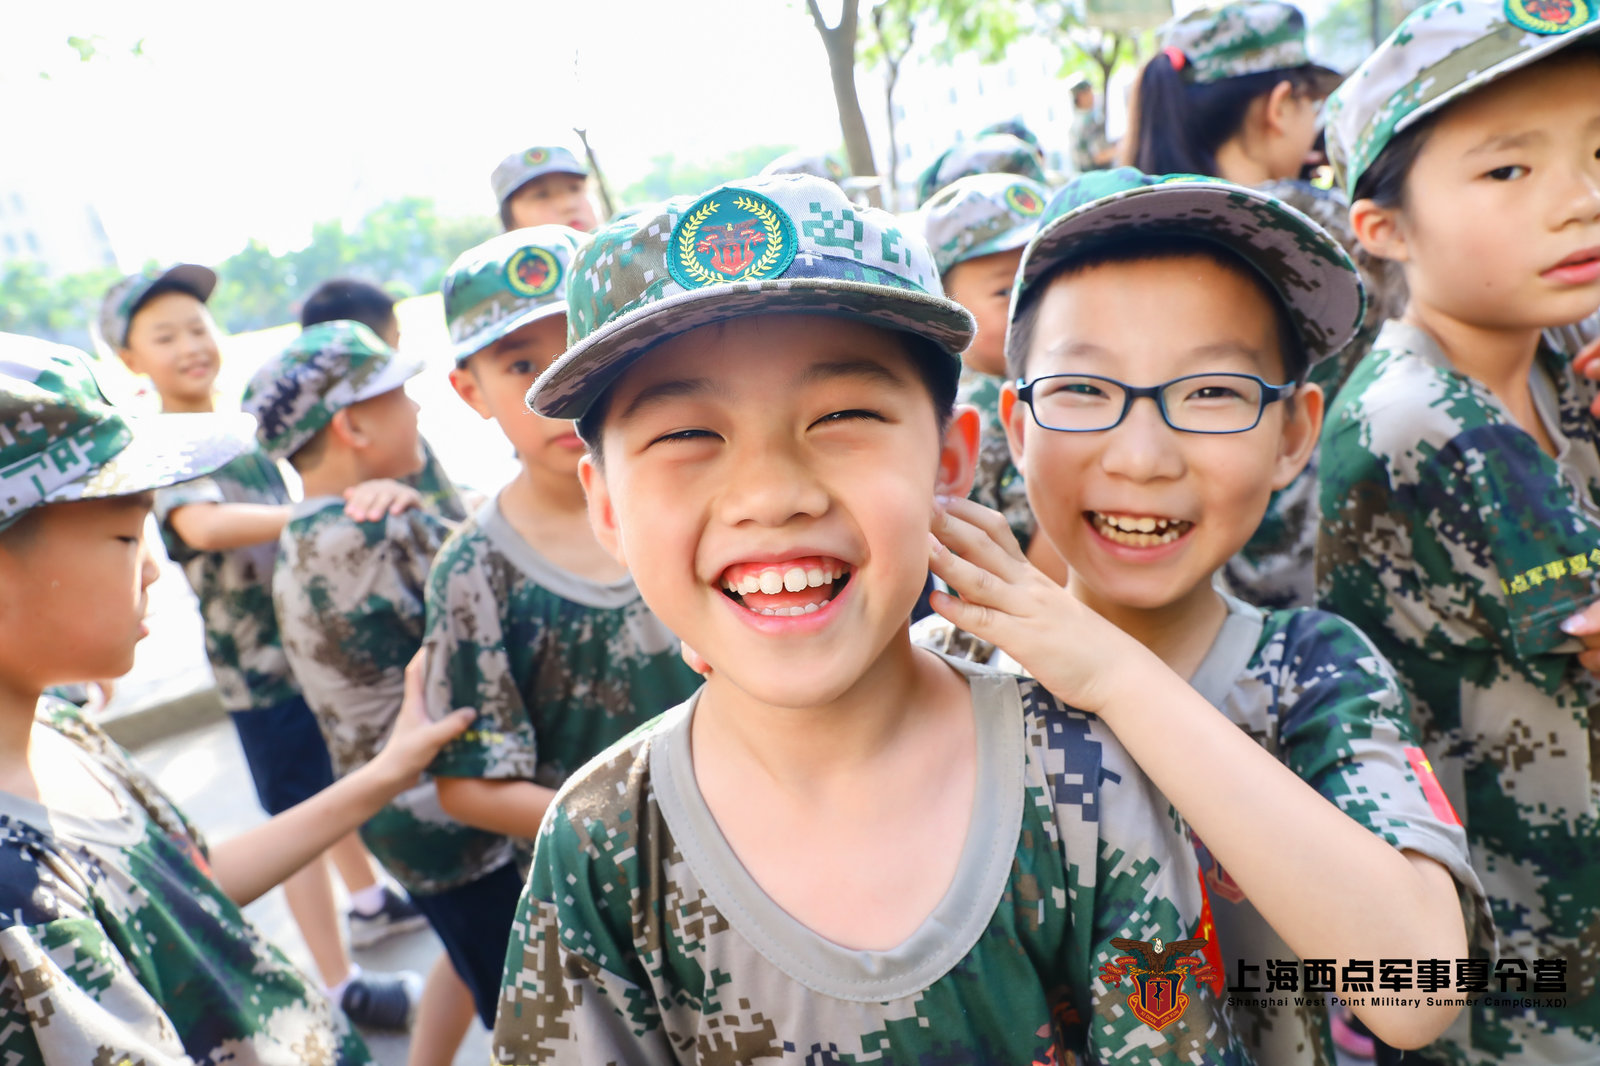 孩子参加军事夏令营需要考虑哪些问题 